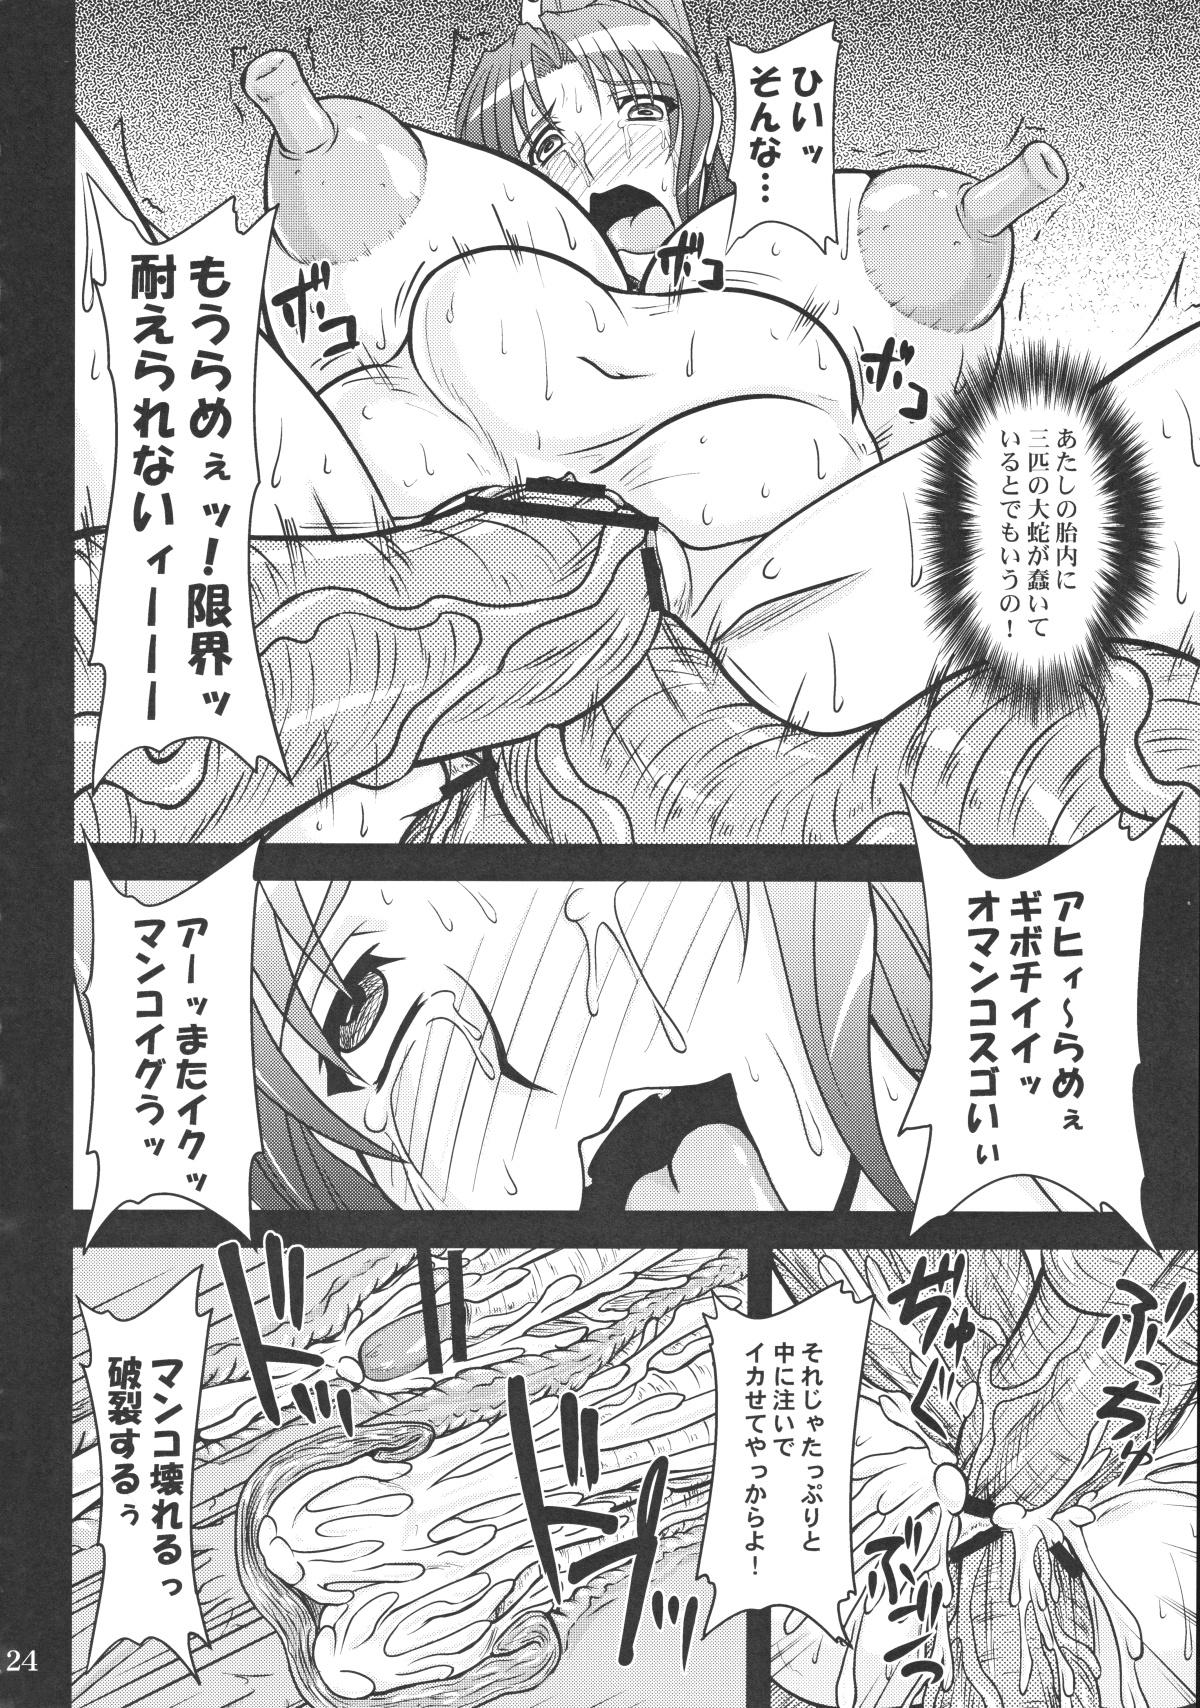 Shiranui Mai to Sanbiki no Orochi 22